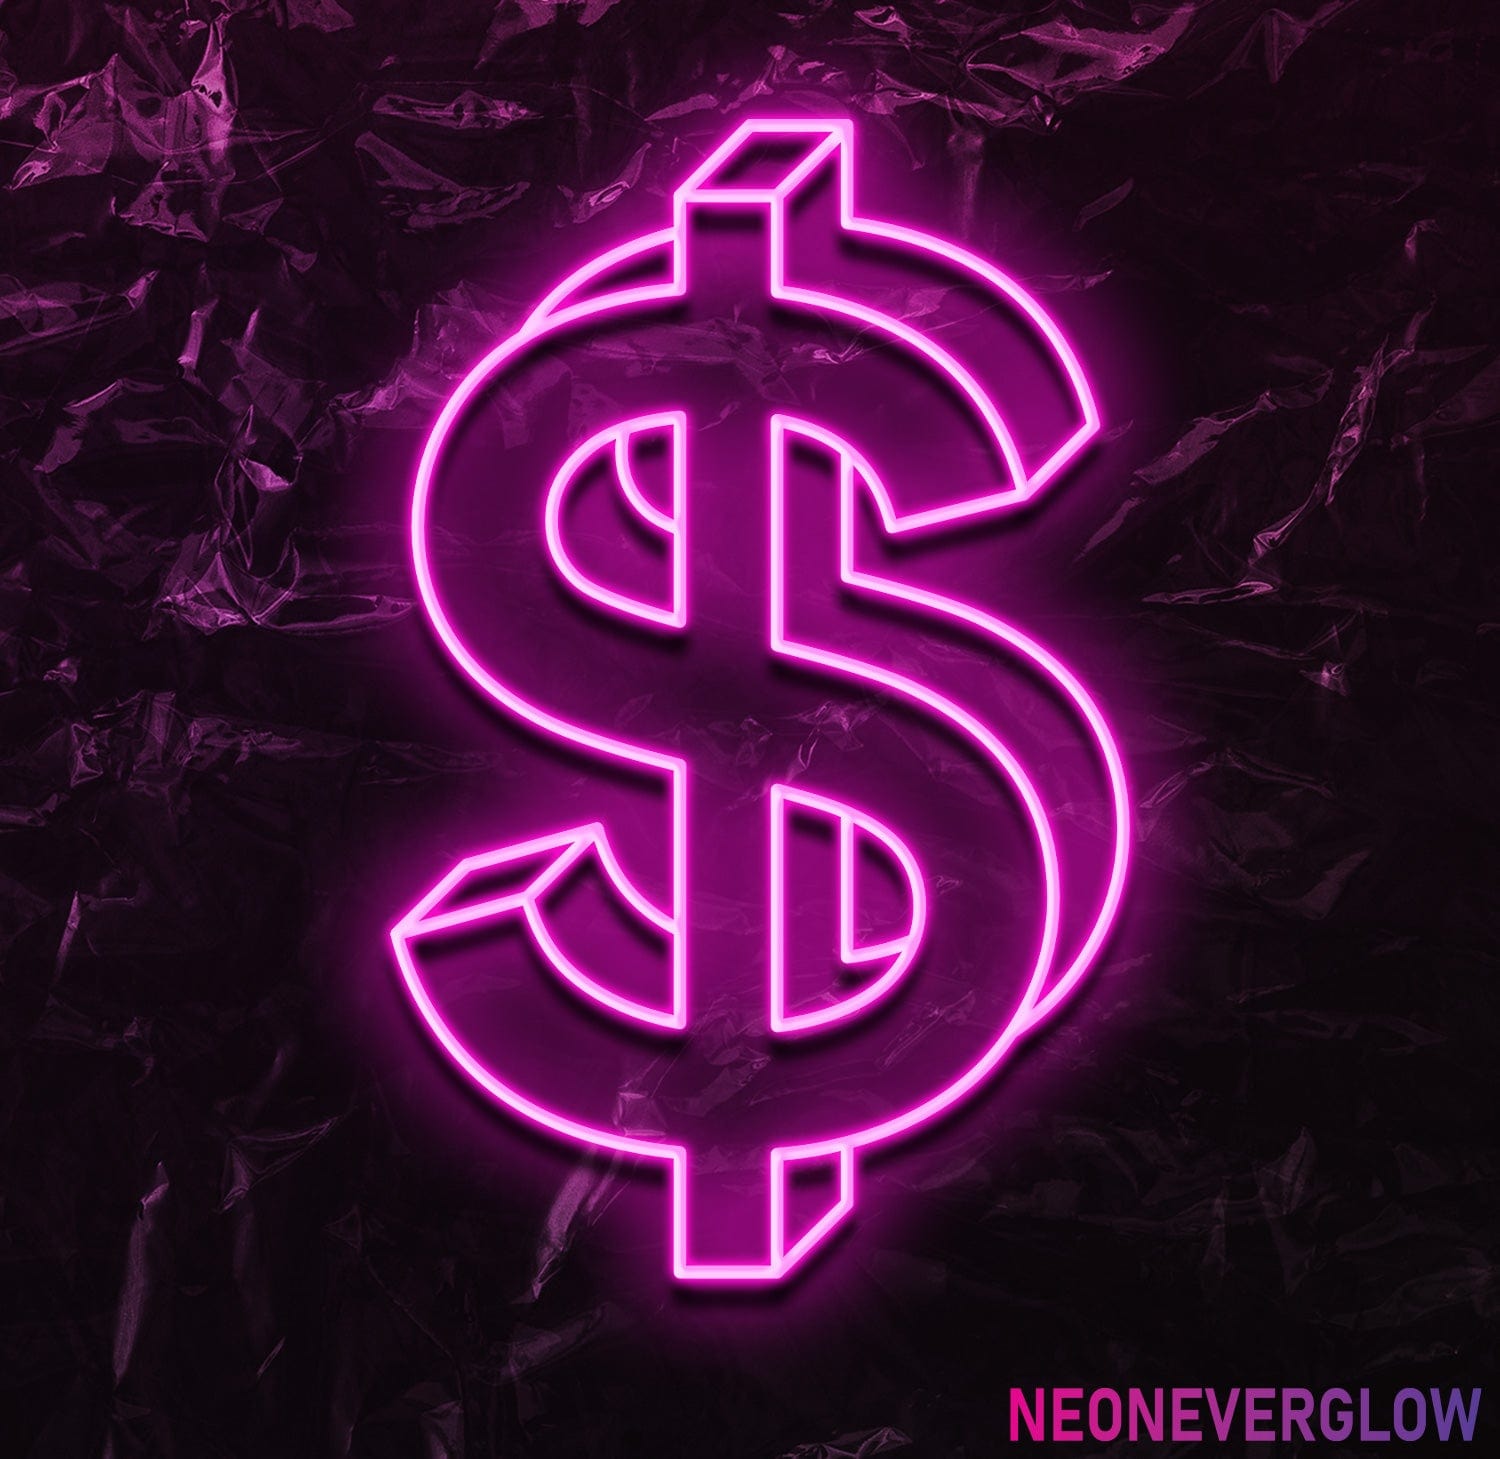 " $ " LED Neonschild - NEONEVERGLOW